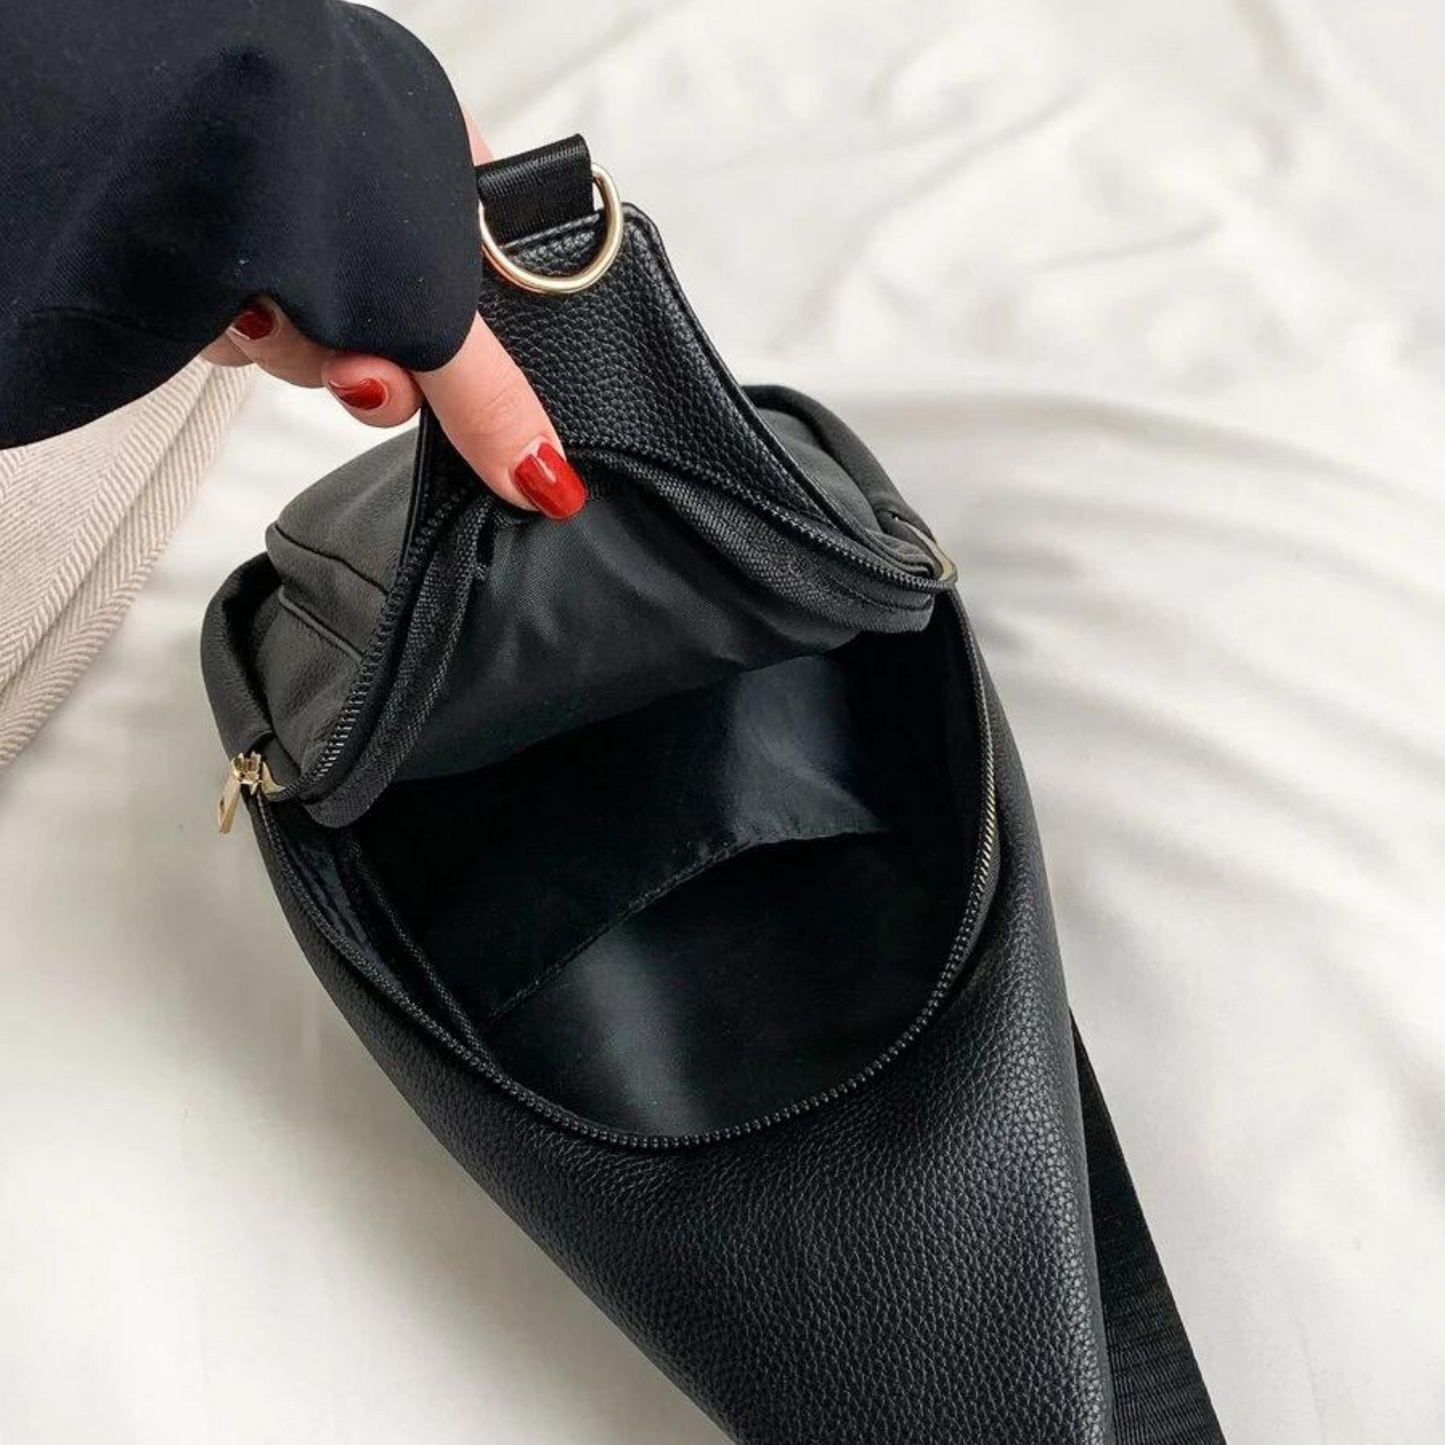 Minimalist Leather Sling Bag Vegan Leather